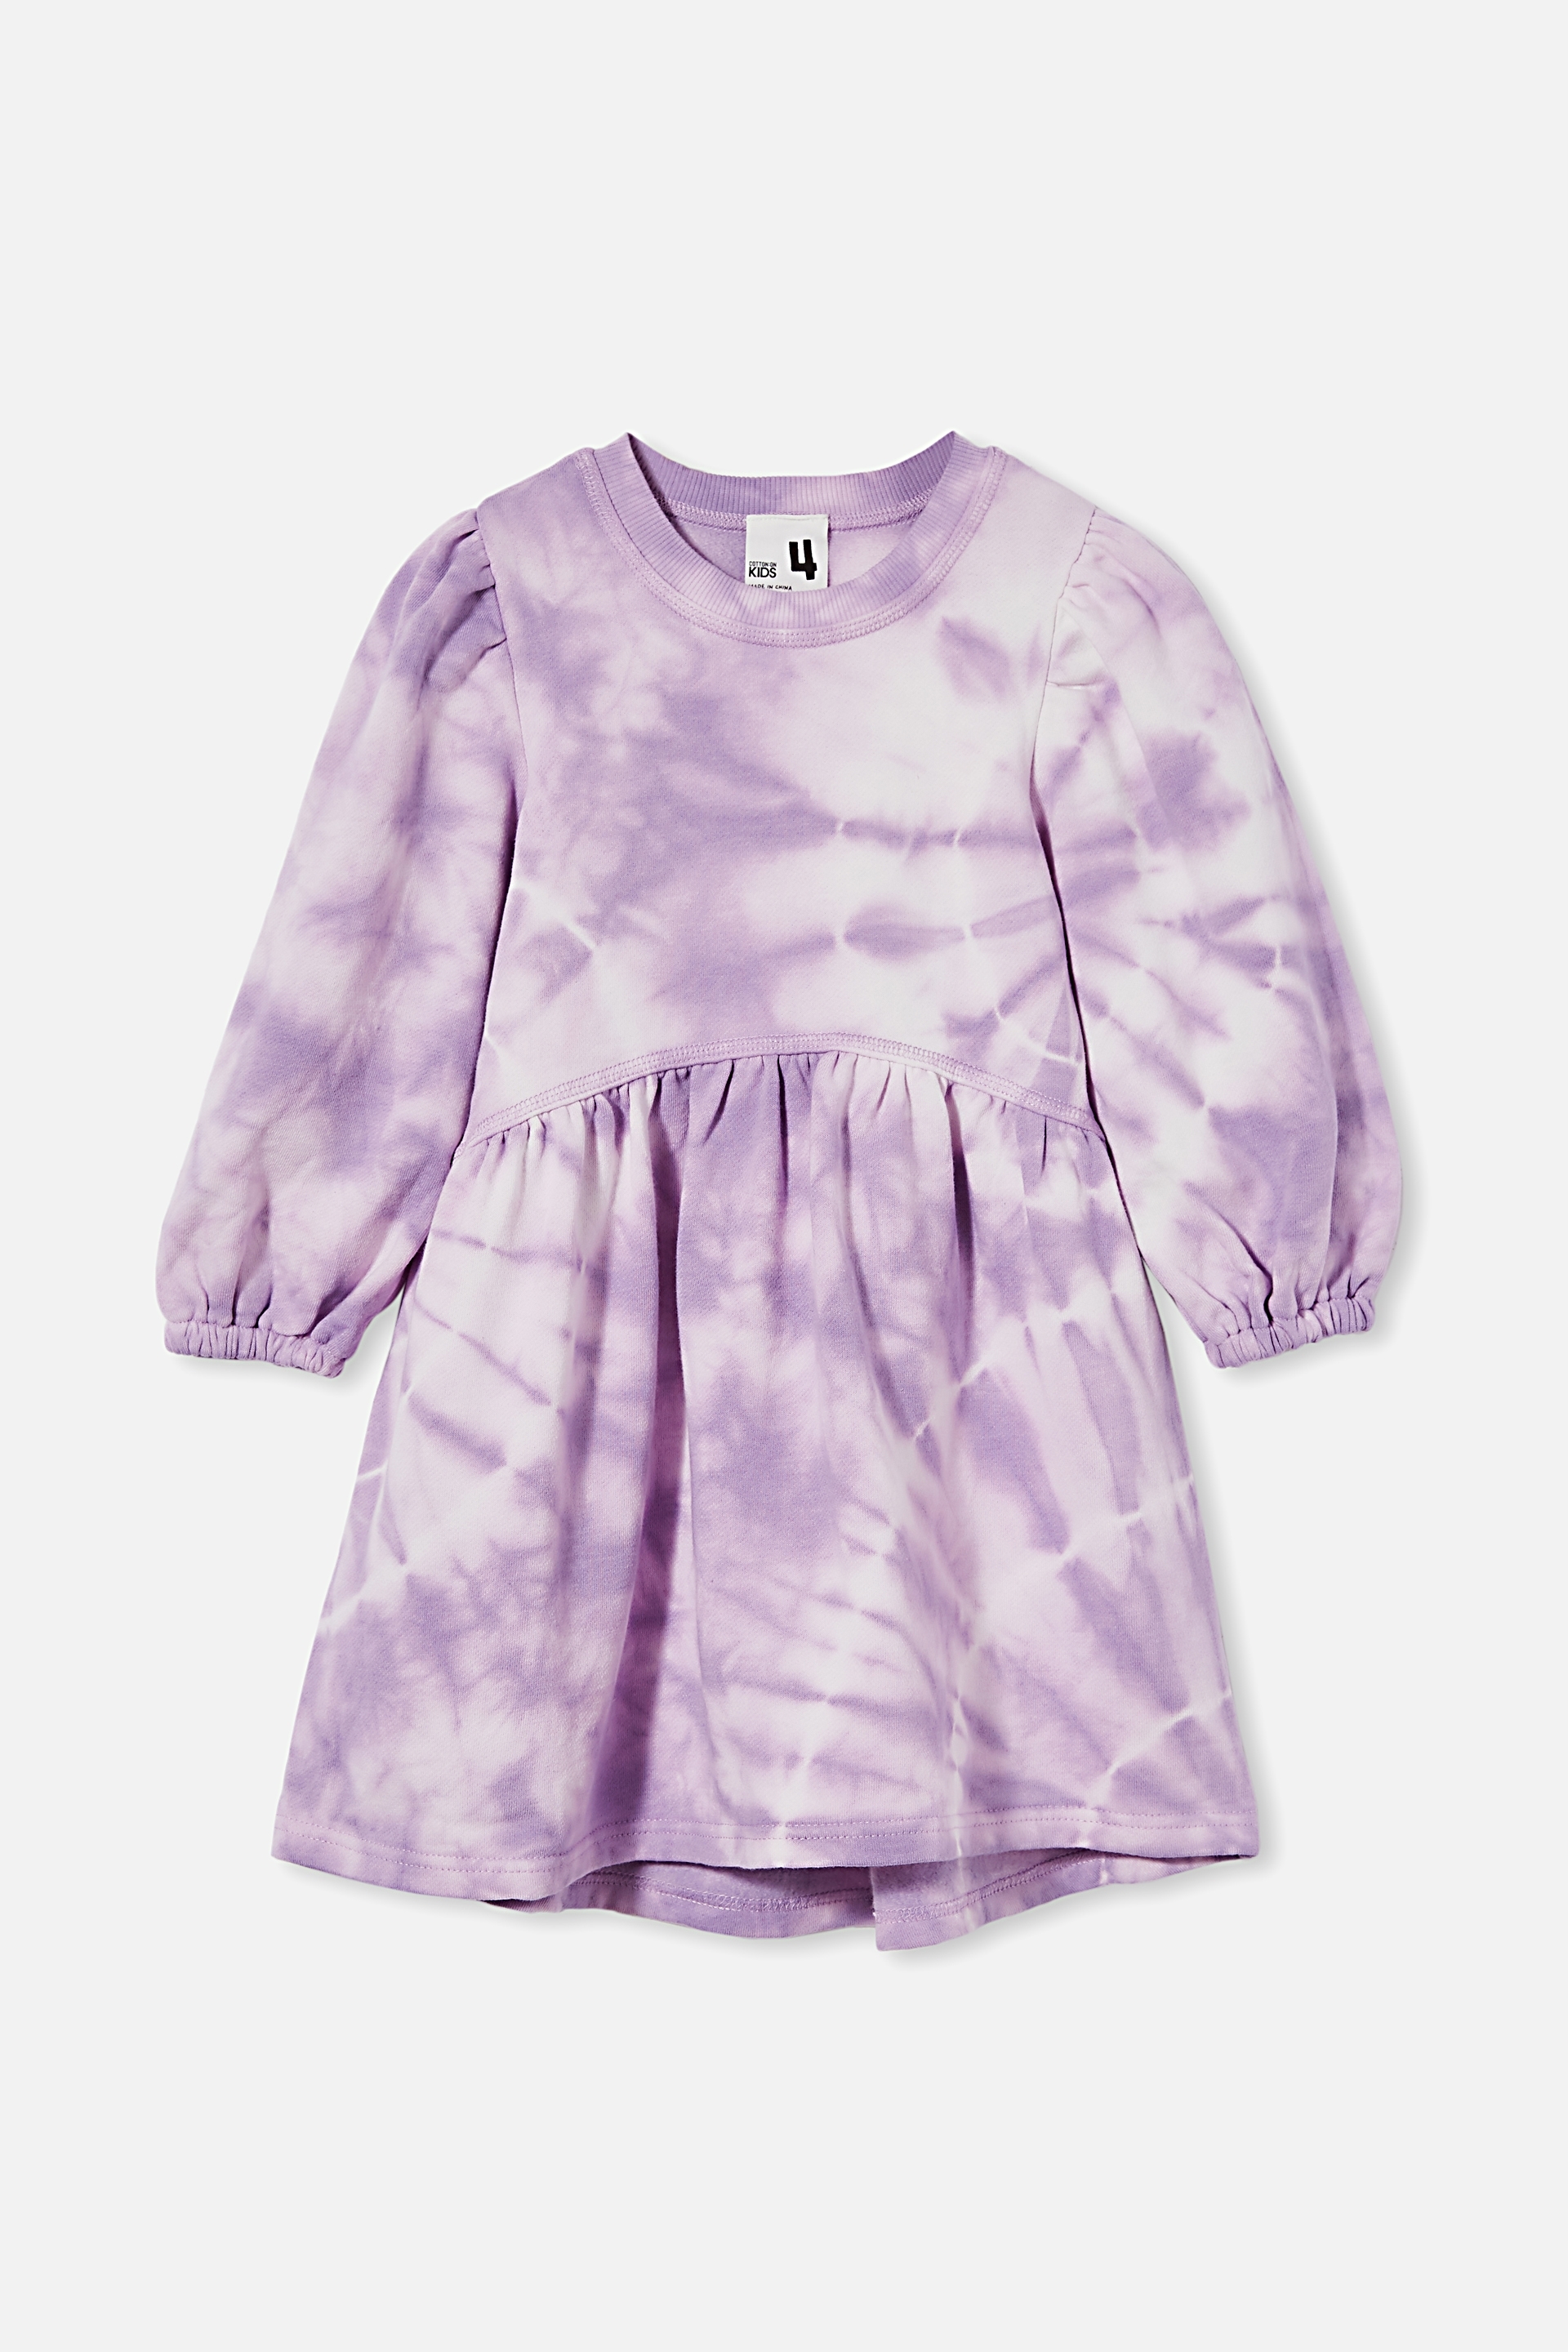 Cotton On Kids - Flora Long Sleeve Dress - Grape soda tie dye